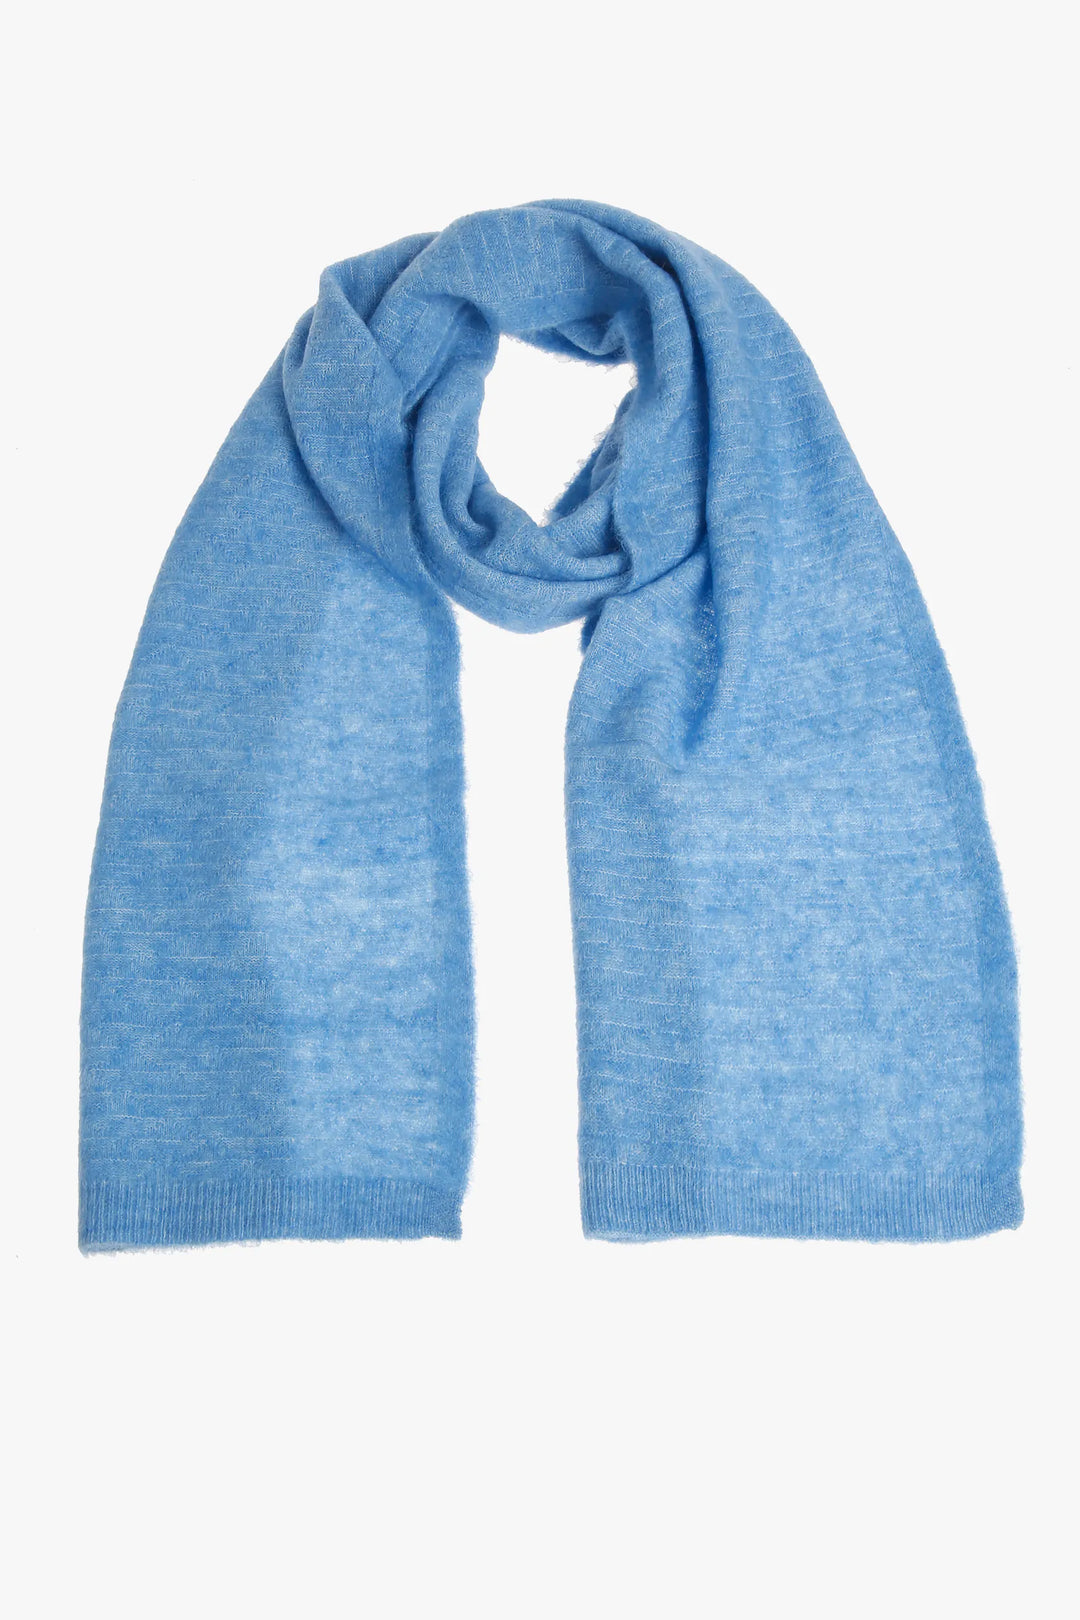 baby blue sjaal van alpaca mix - xandres - alenar-blauw - grote maten - dameskleding - kledingwinkel - herent - leuven